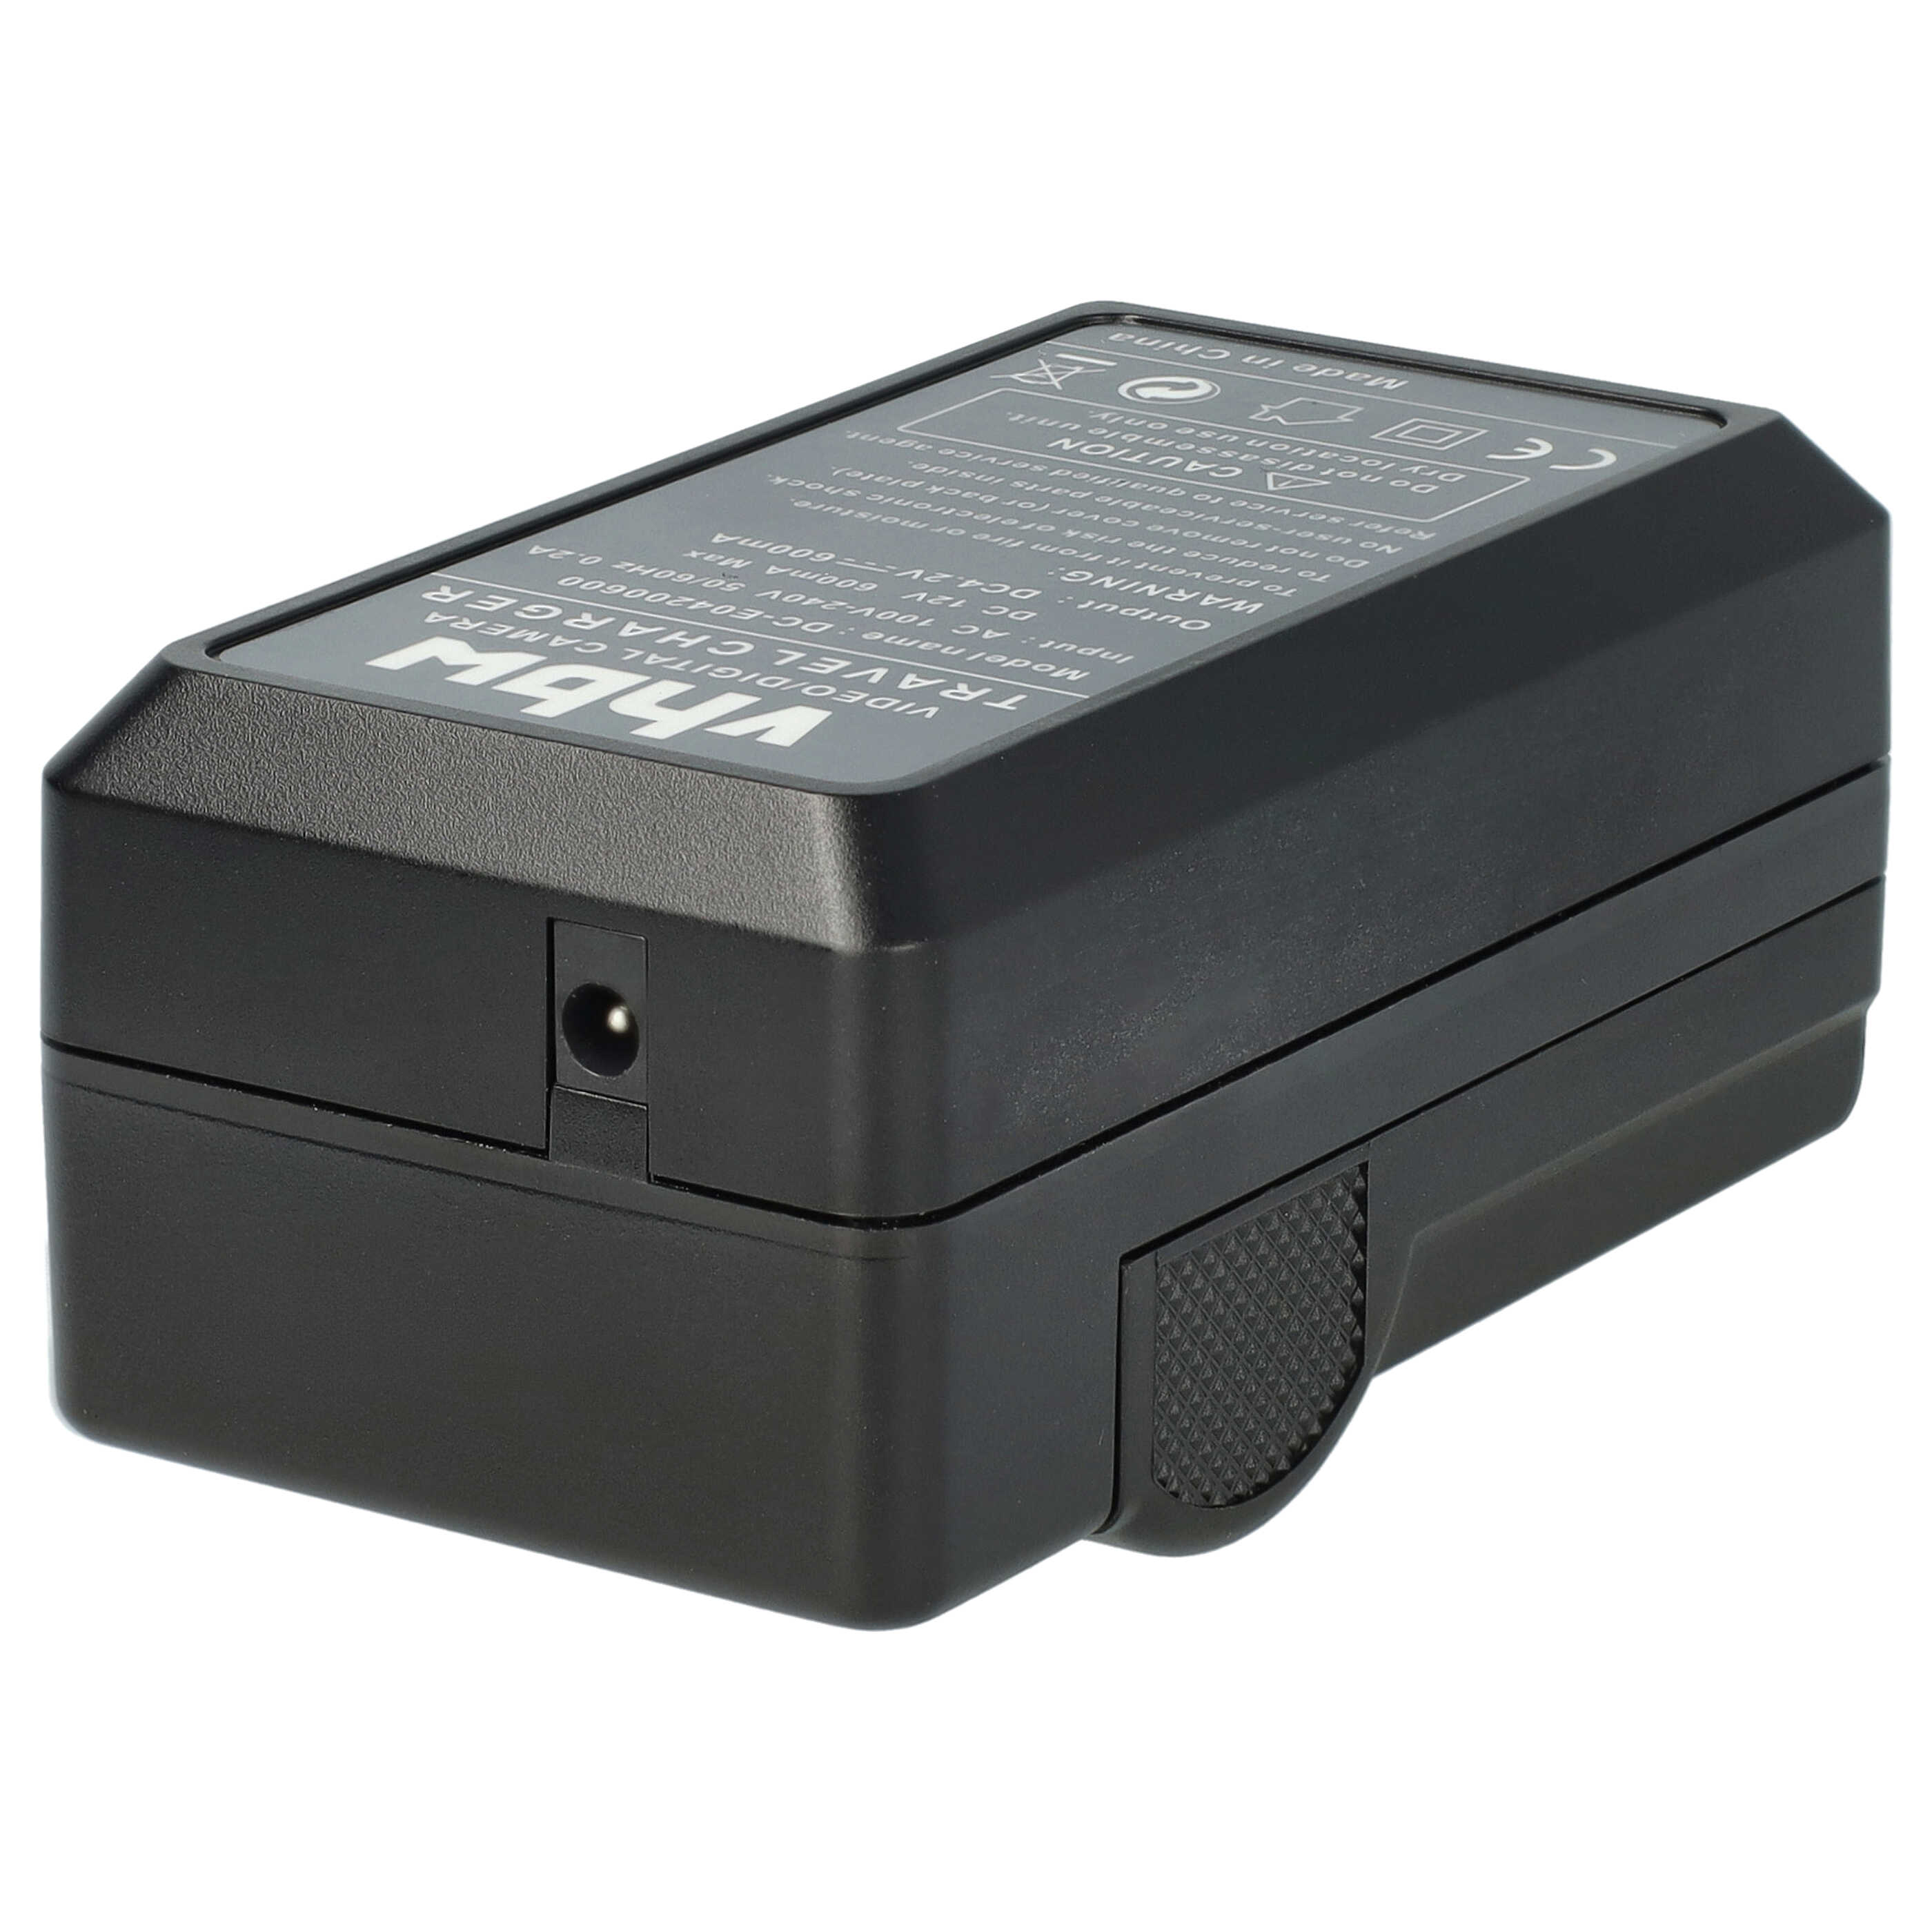 Akku Ladegerät passend für Lumix DMC-3D1 Kamera u.a. - 0,6 A, 4,2 V